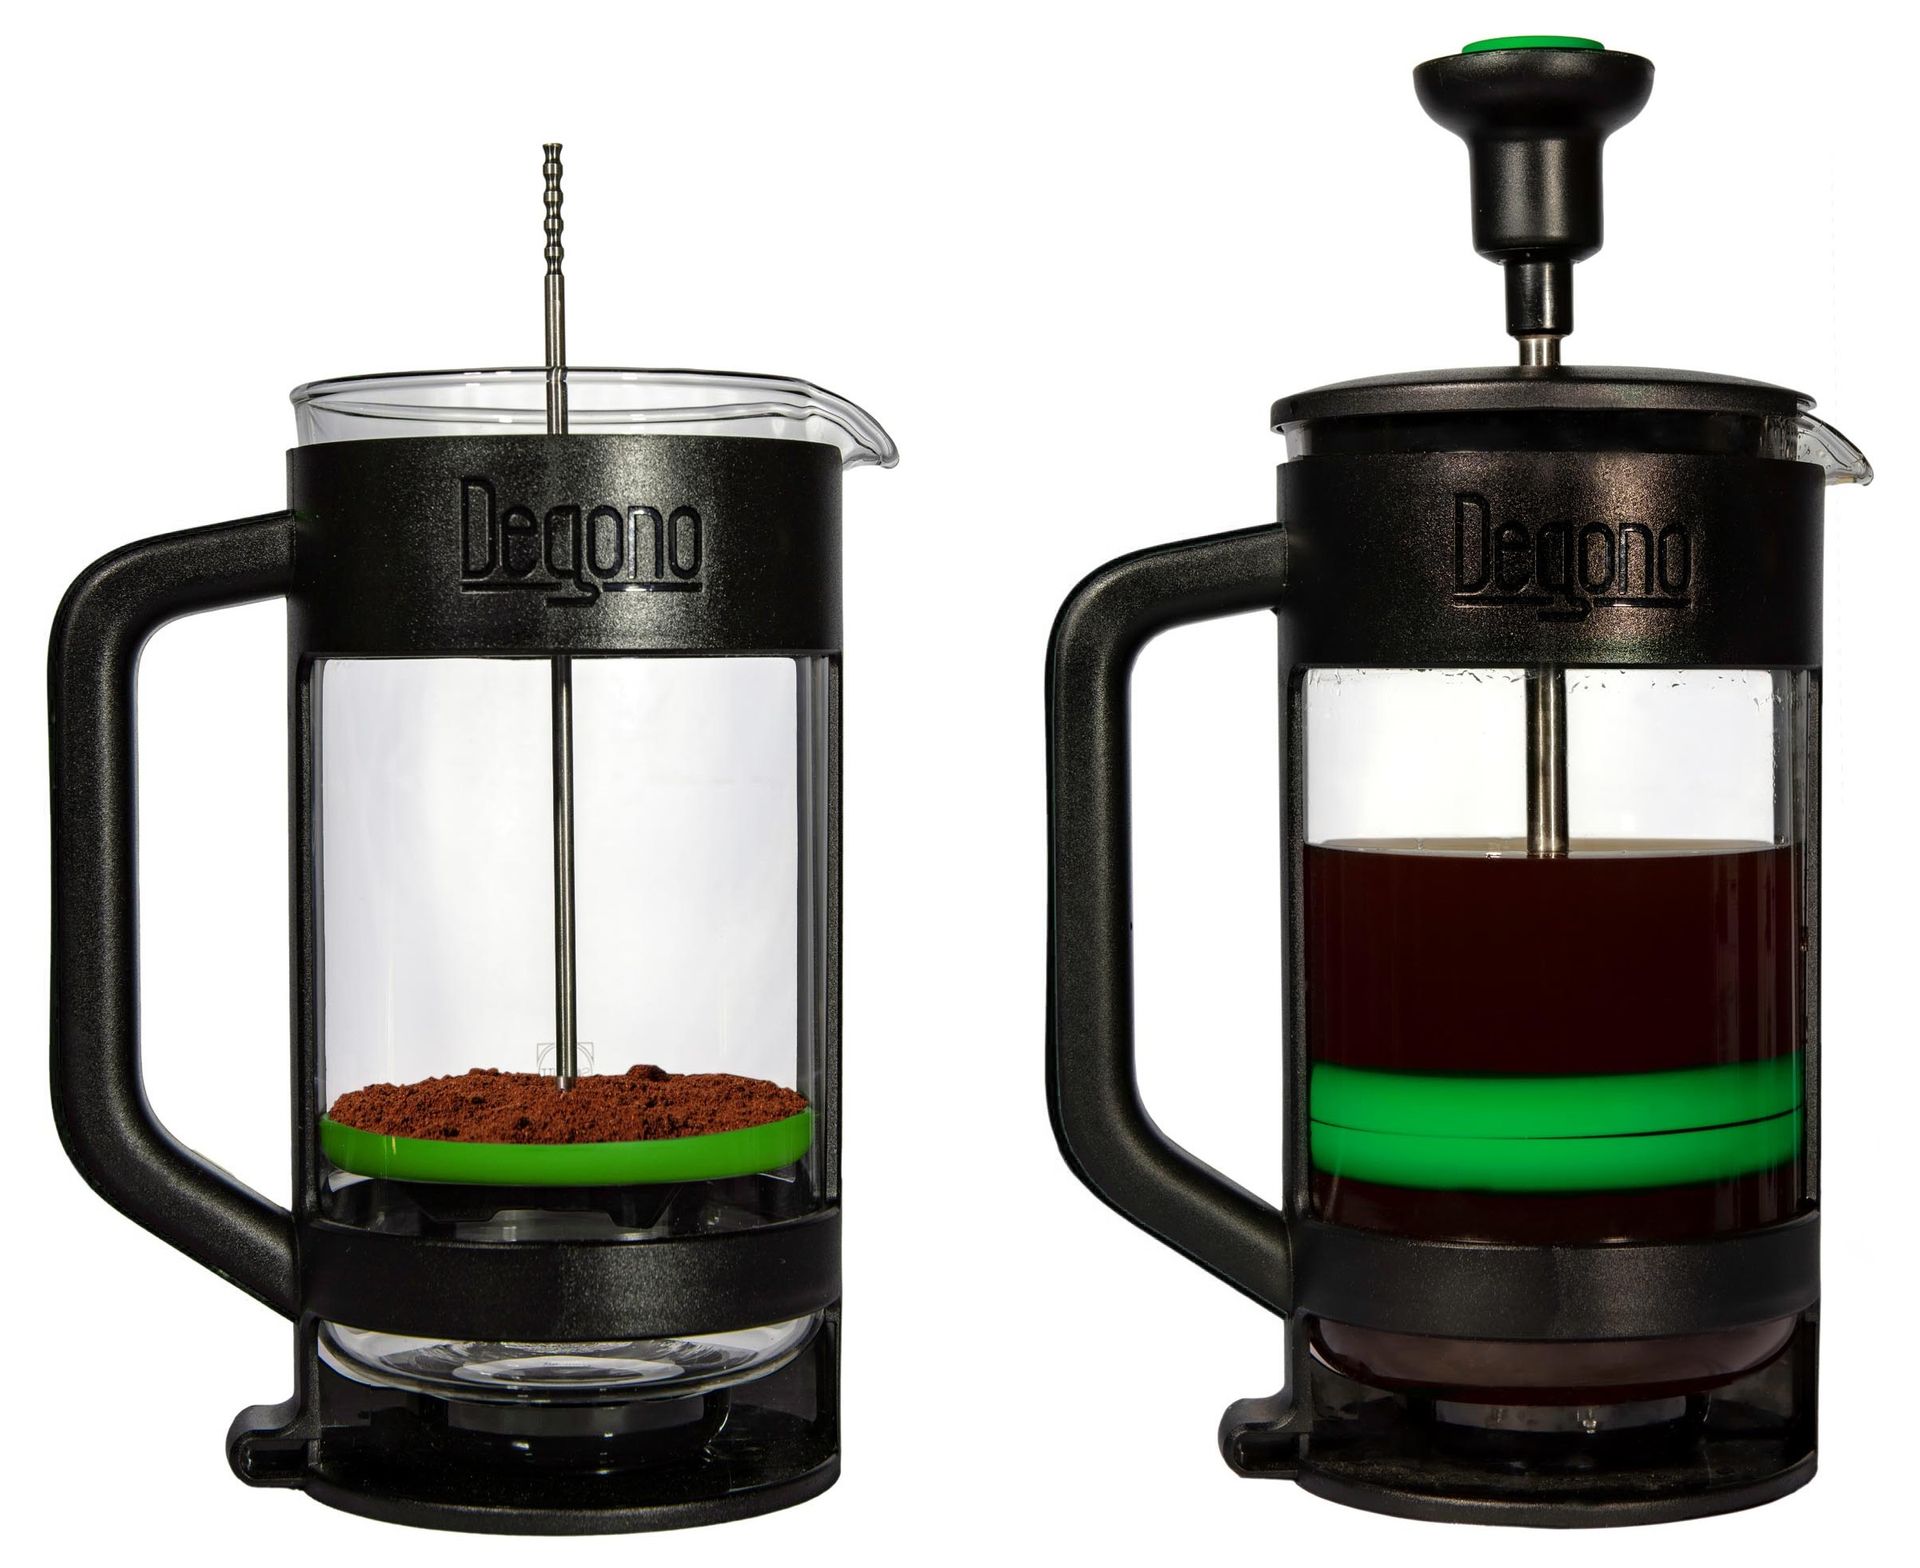 Degono Tea/Coffee Press